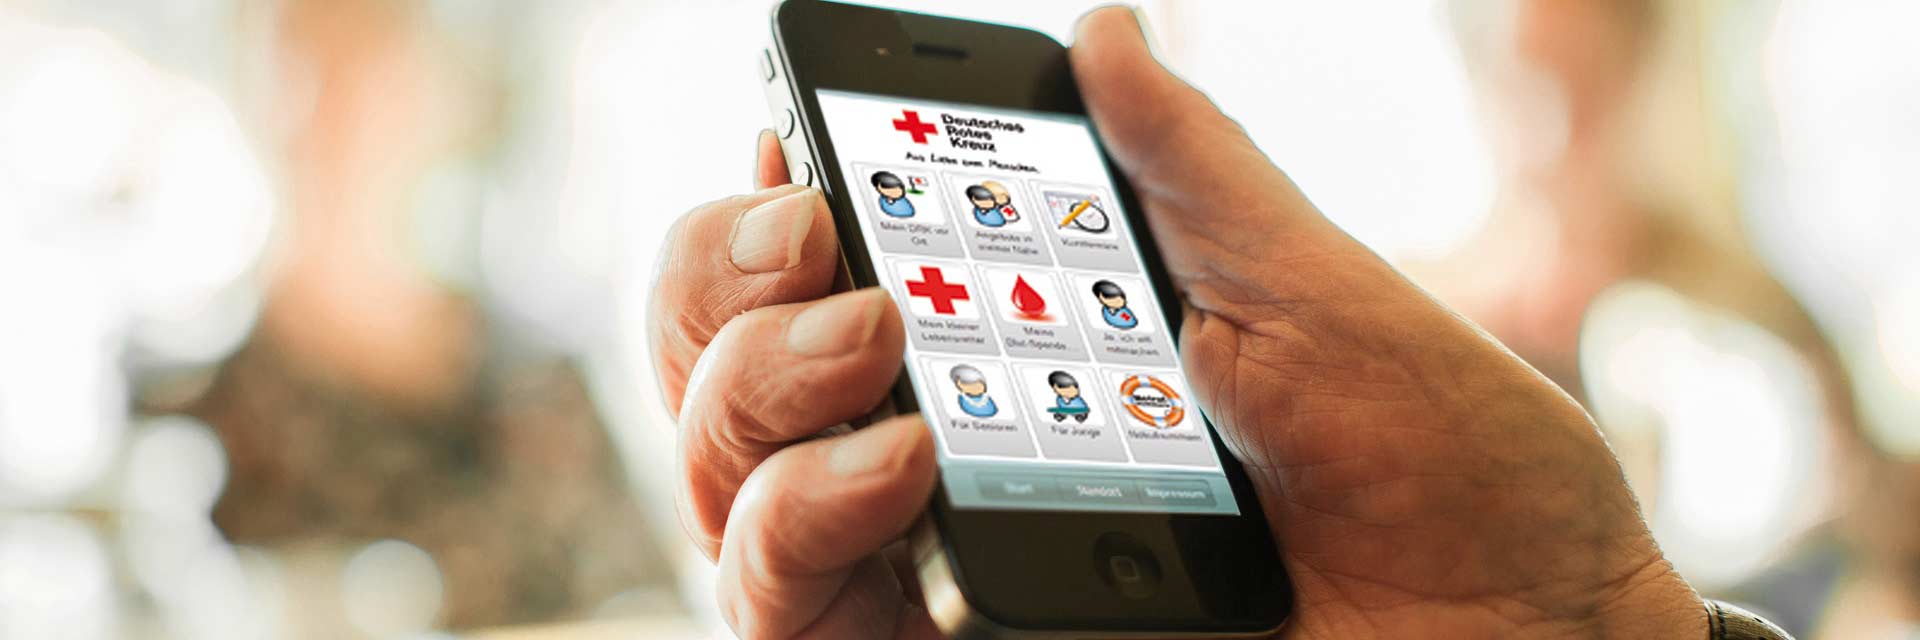 Eine Hand hält ein Smartphone, auf dem die Rotkreuz-App aktiv ist.